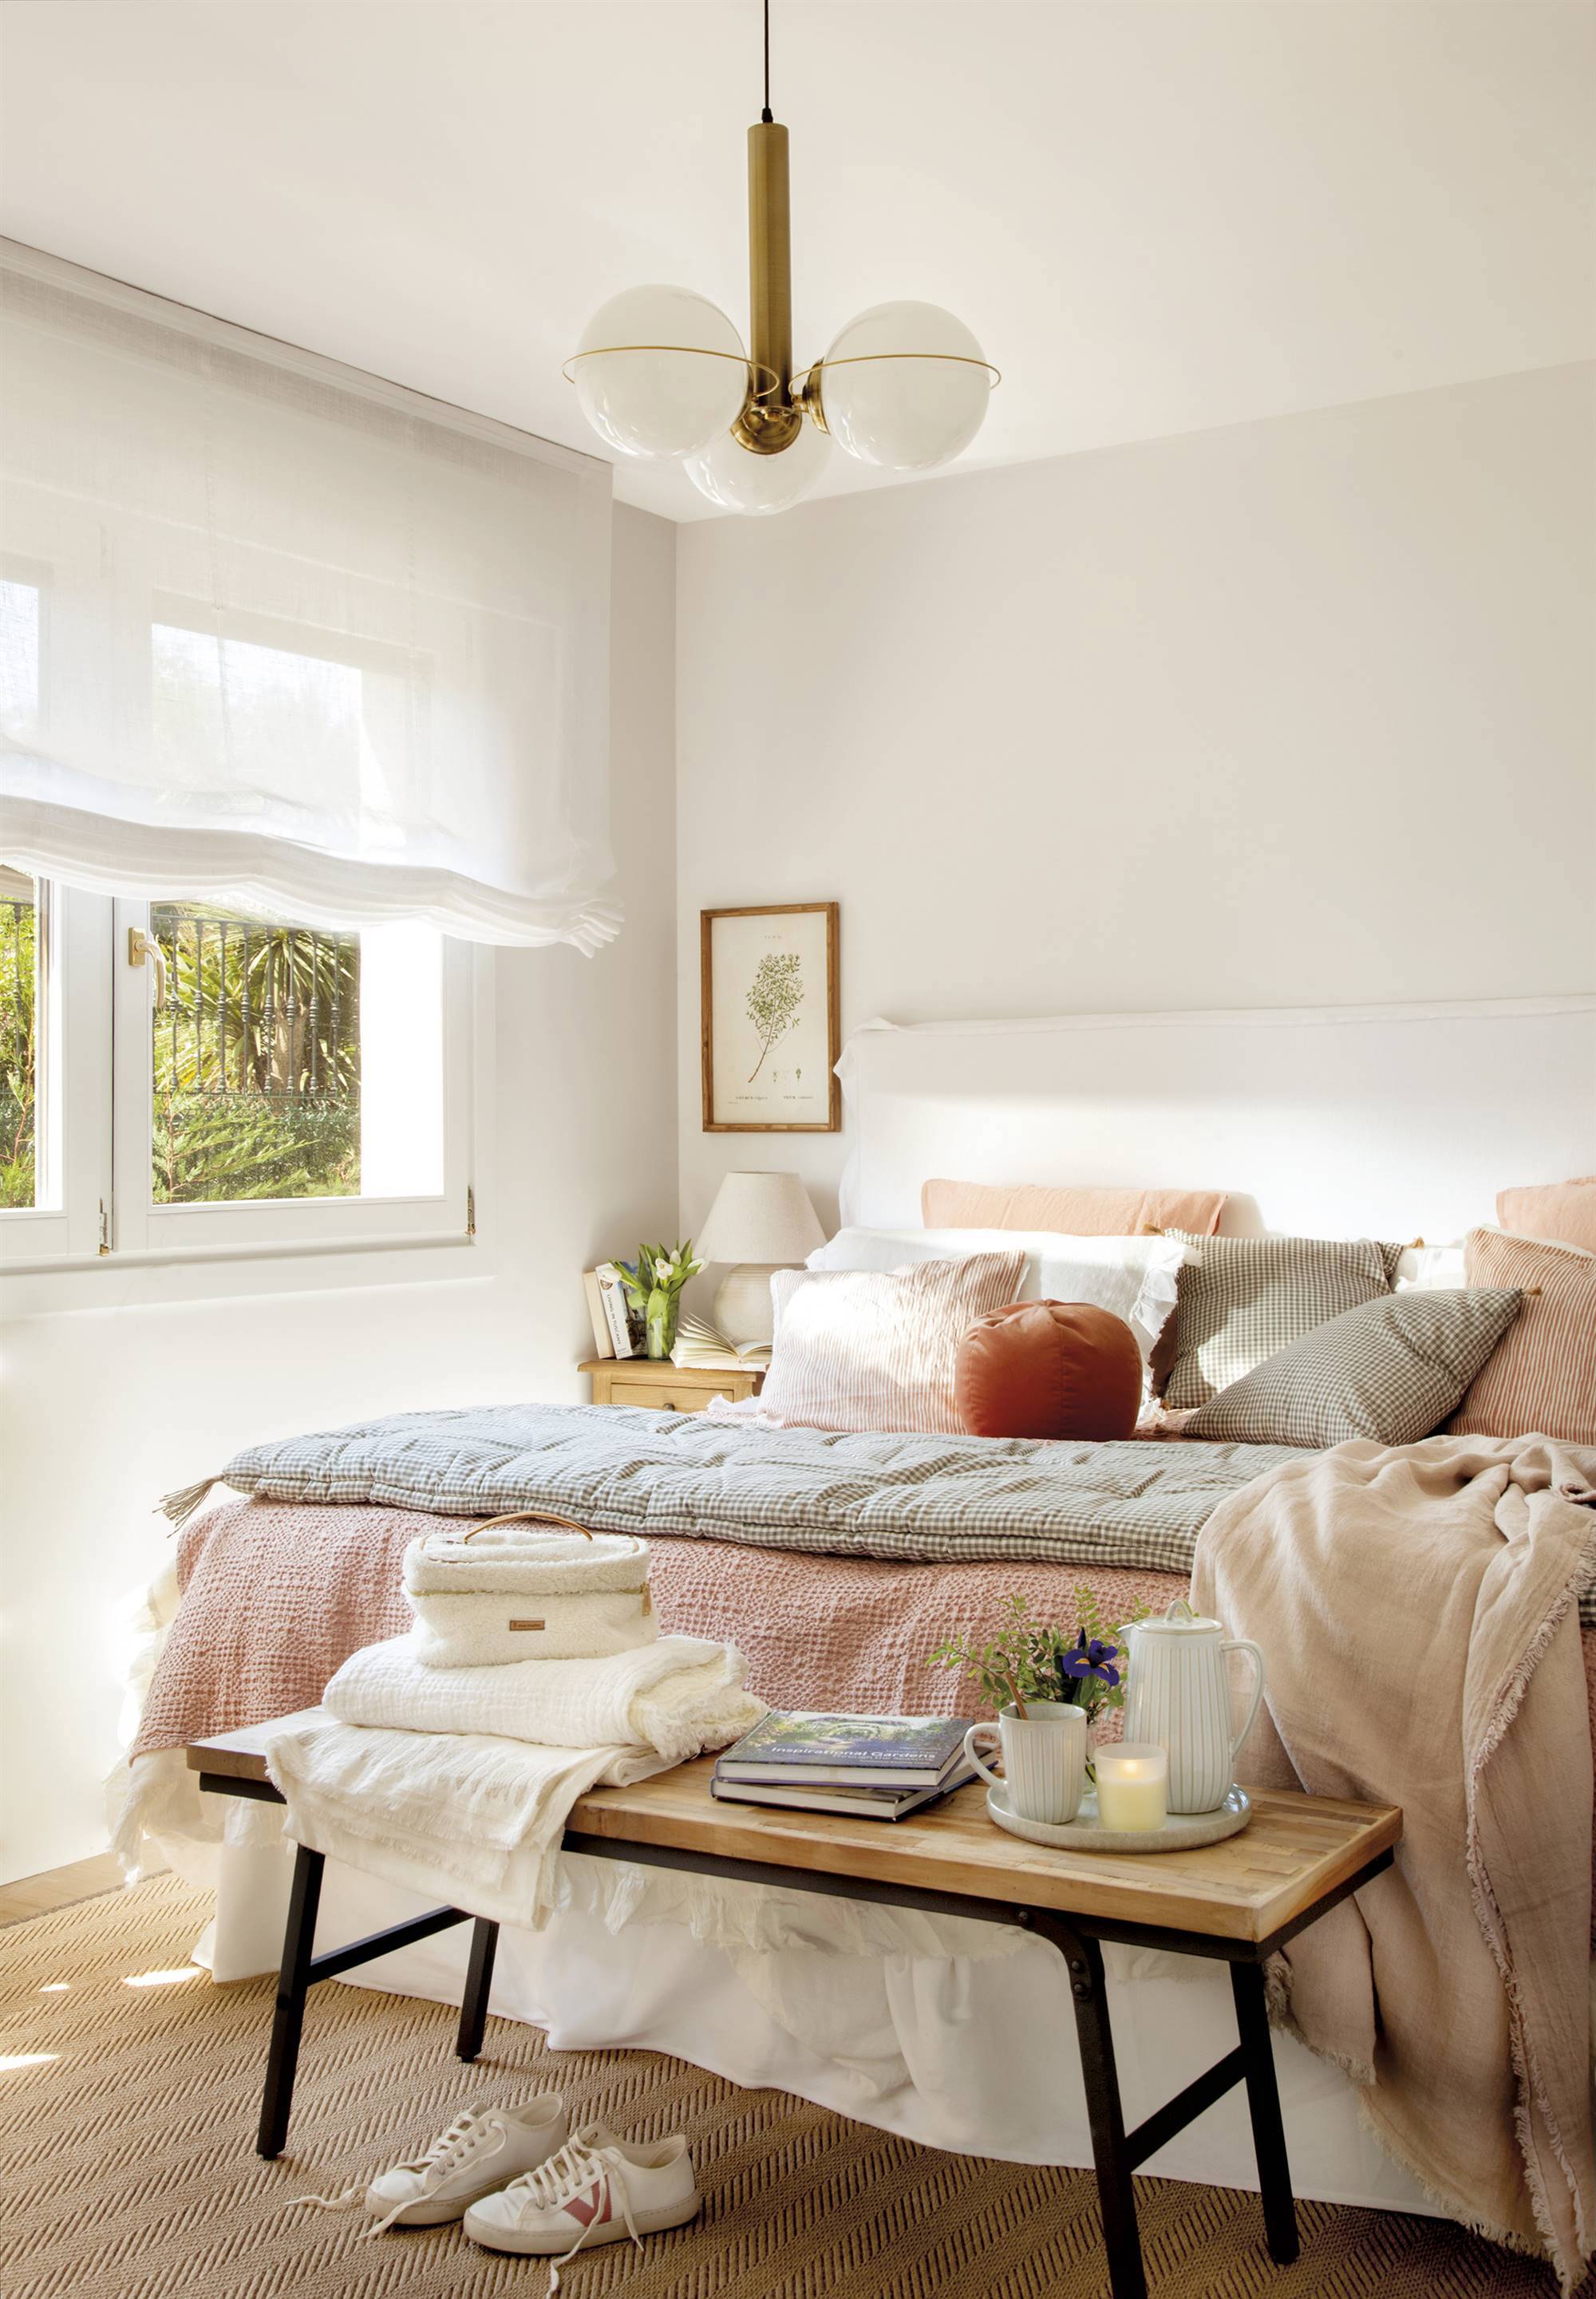 Dormitorio con cama de color blanco, estores blancos, lámpara de techo con bolas, ropa de cama en tonos rosados y banco a los pies.